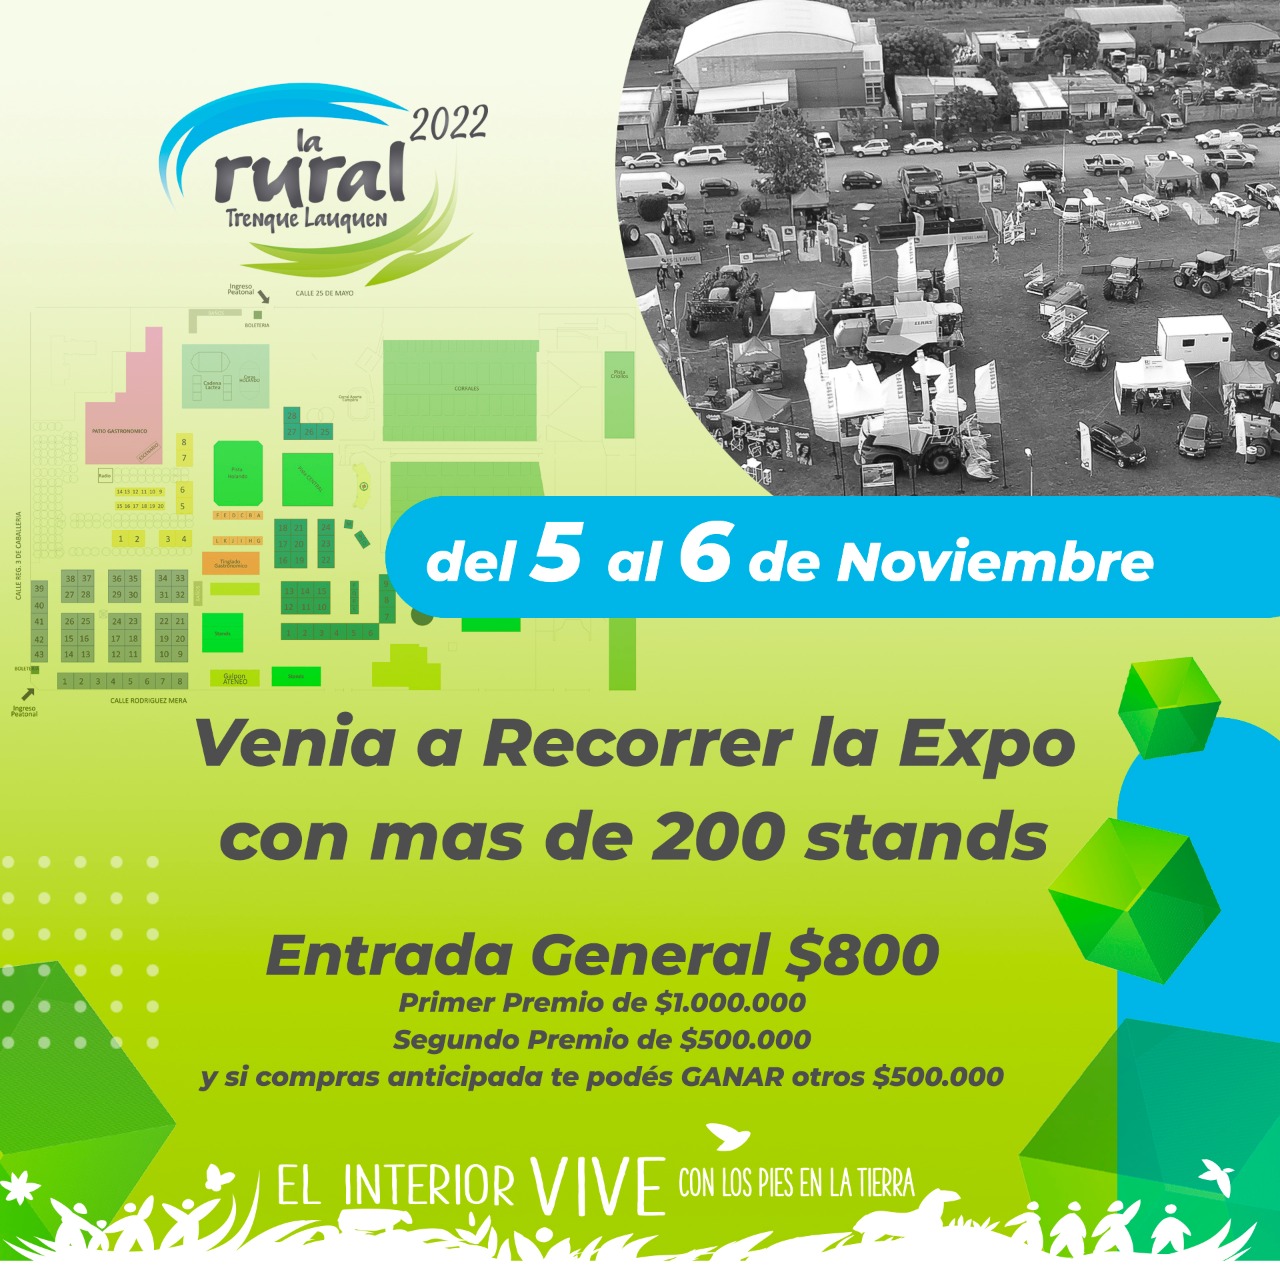 Del 3 al 6 de noviembre se realizará “La Rural 2022”